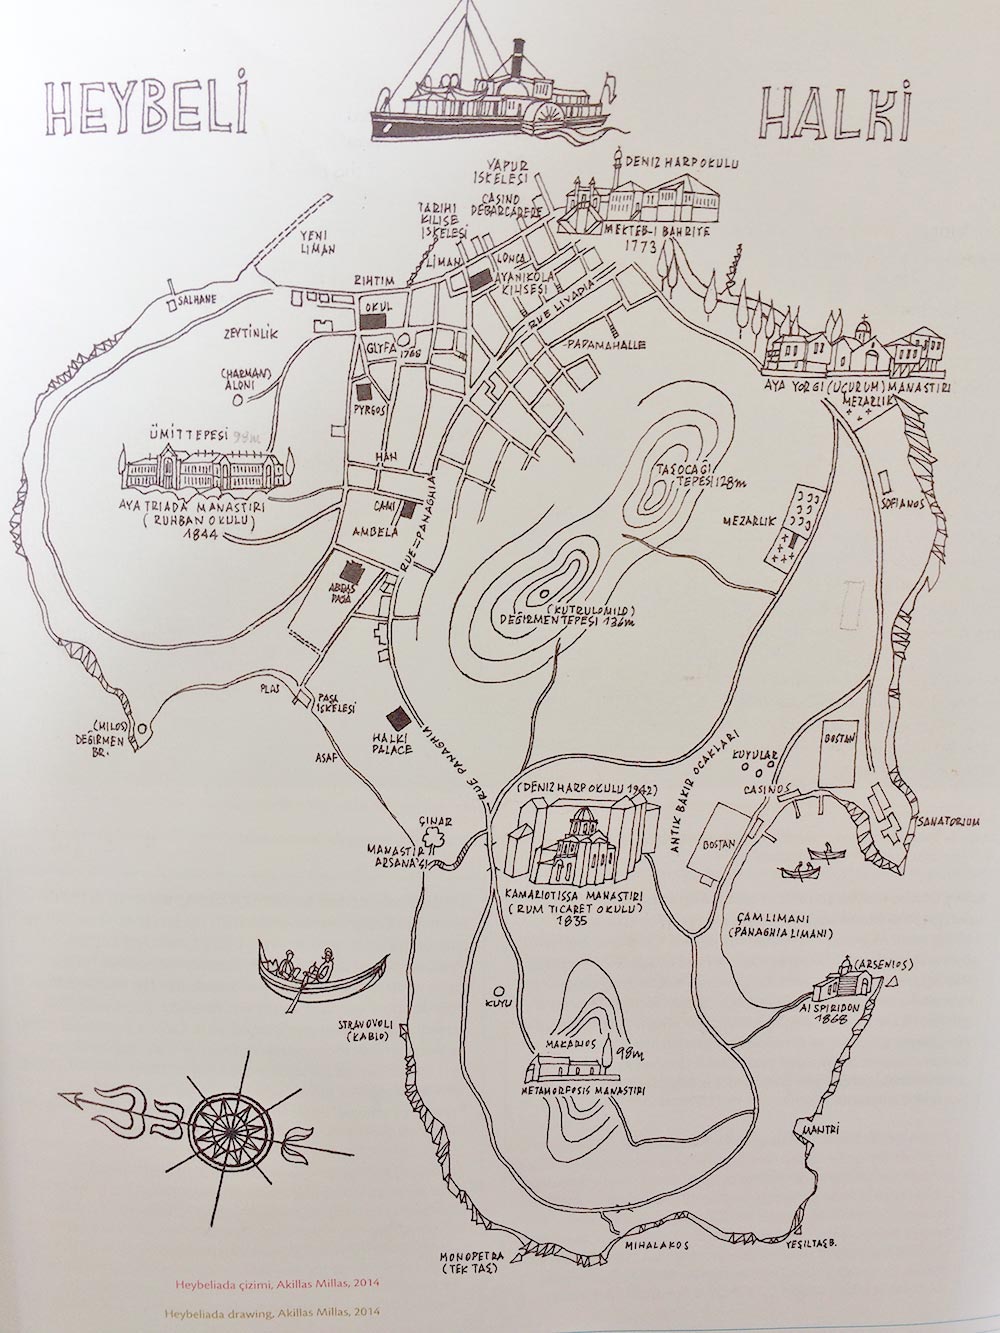 Millas'ın Heybeliada / Halki haritası çizimi